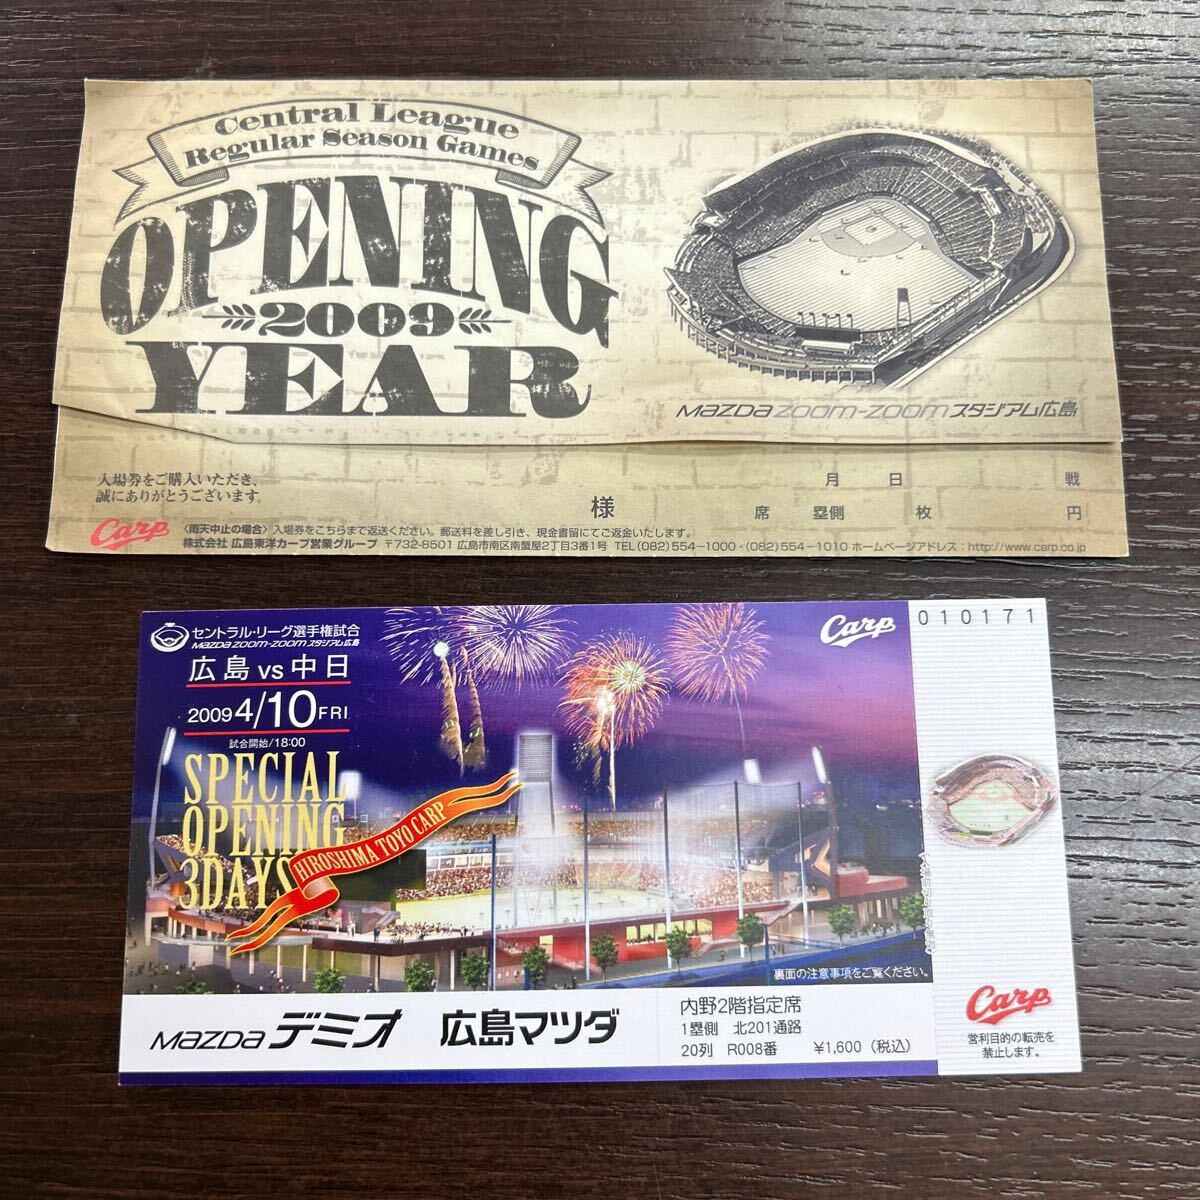 2009年 4月10日 中日戦 未使用品 広島カープ ズムスタ チケット オープニングチケット 過去のチケット の画像1